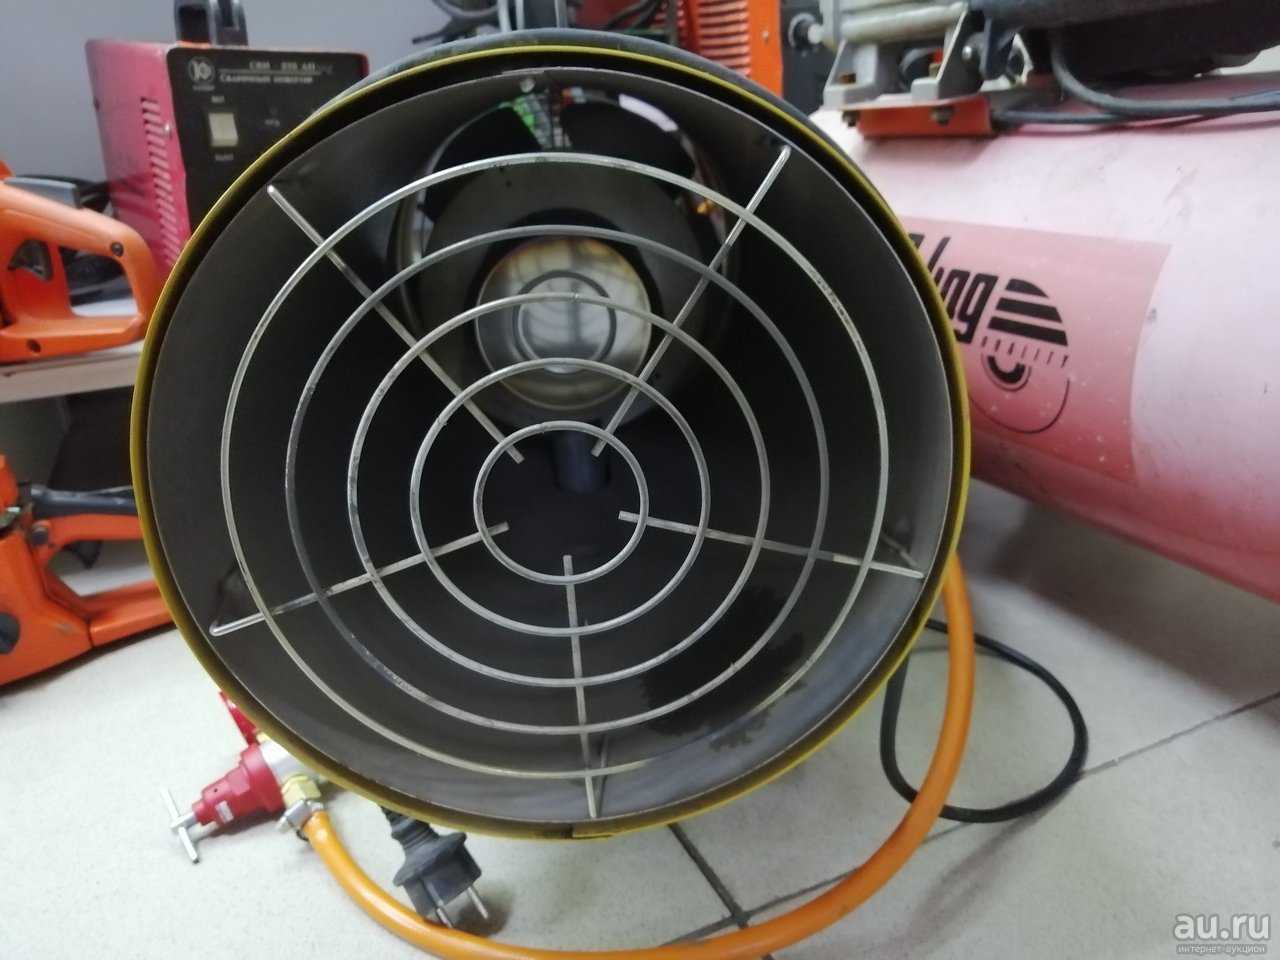 Воздухонагреватель (теплогенератор) на отработанном масле energylogic el140h-s арт. 11163